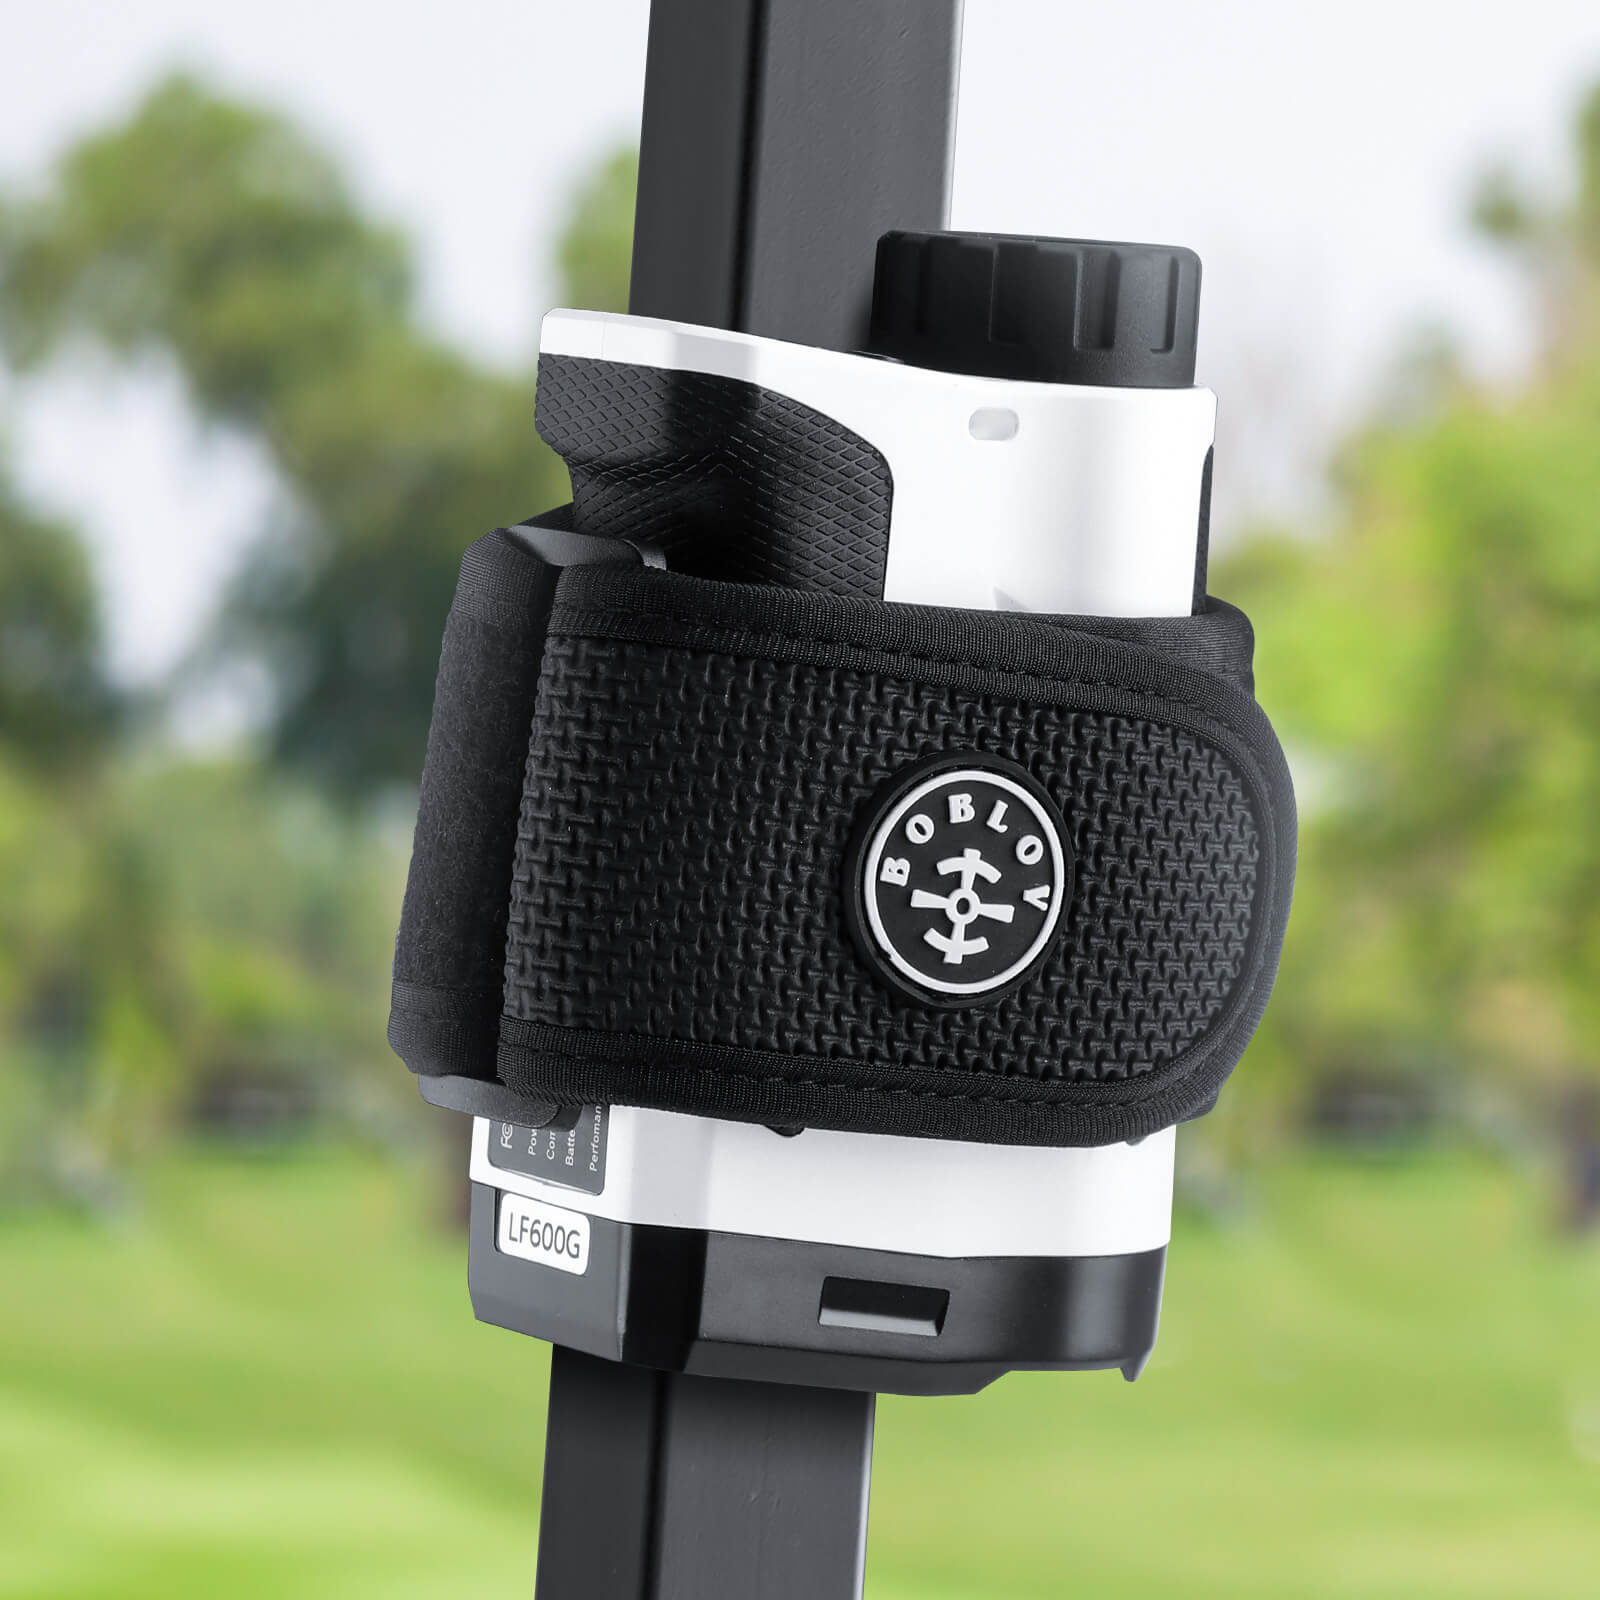 Boblov golf rangerfinder magnetisk holderrem, universel magnetrem stærk magnetisme og blid berøring omslutter golfafstandsmåler